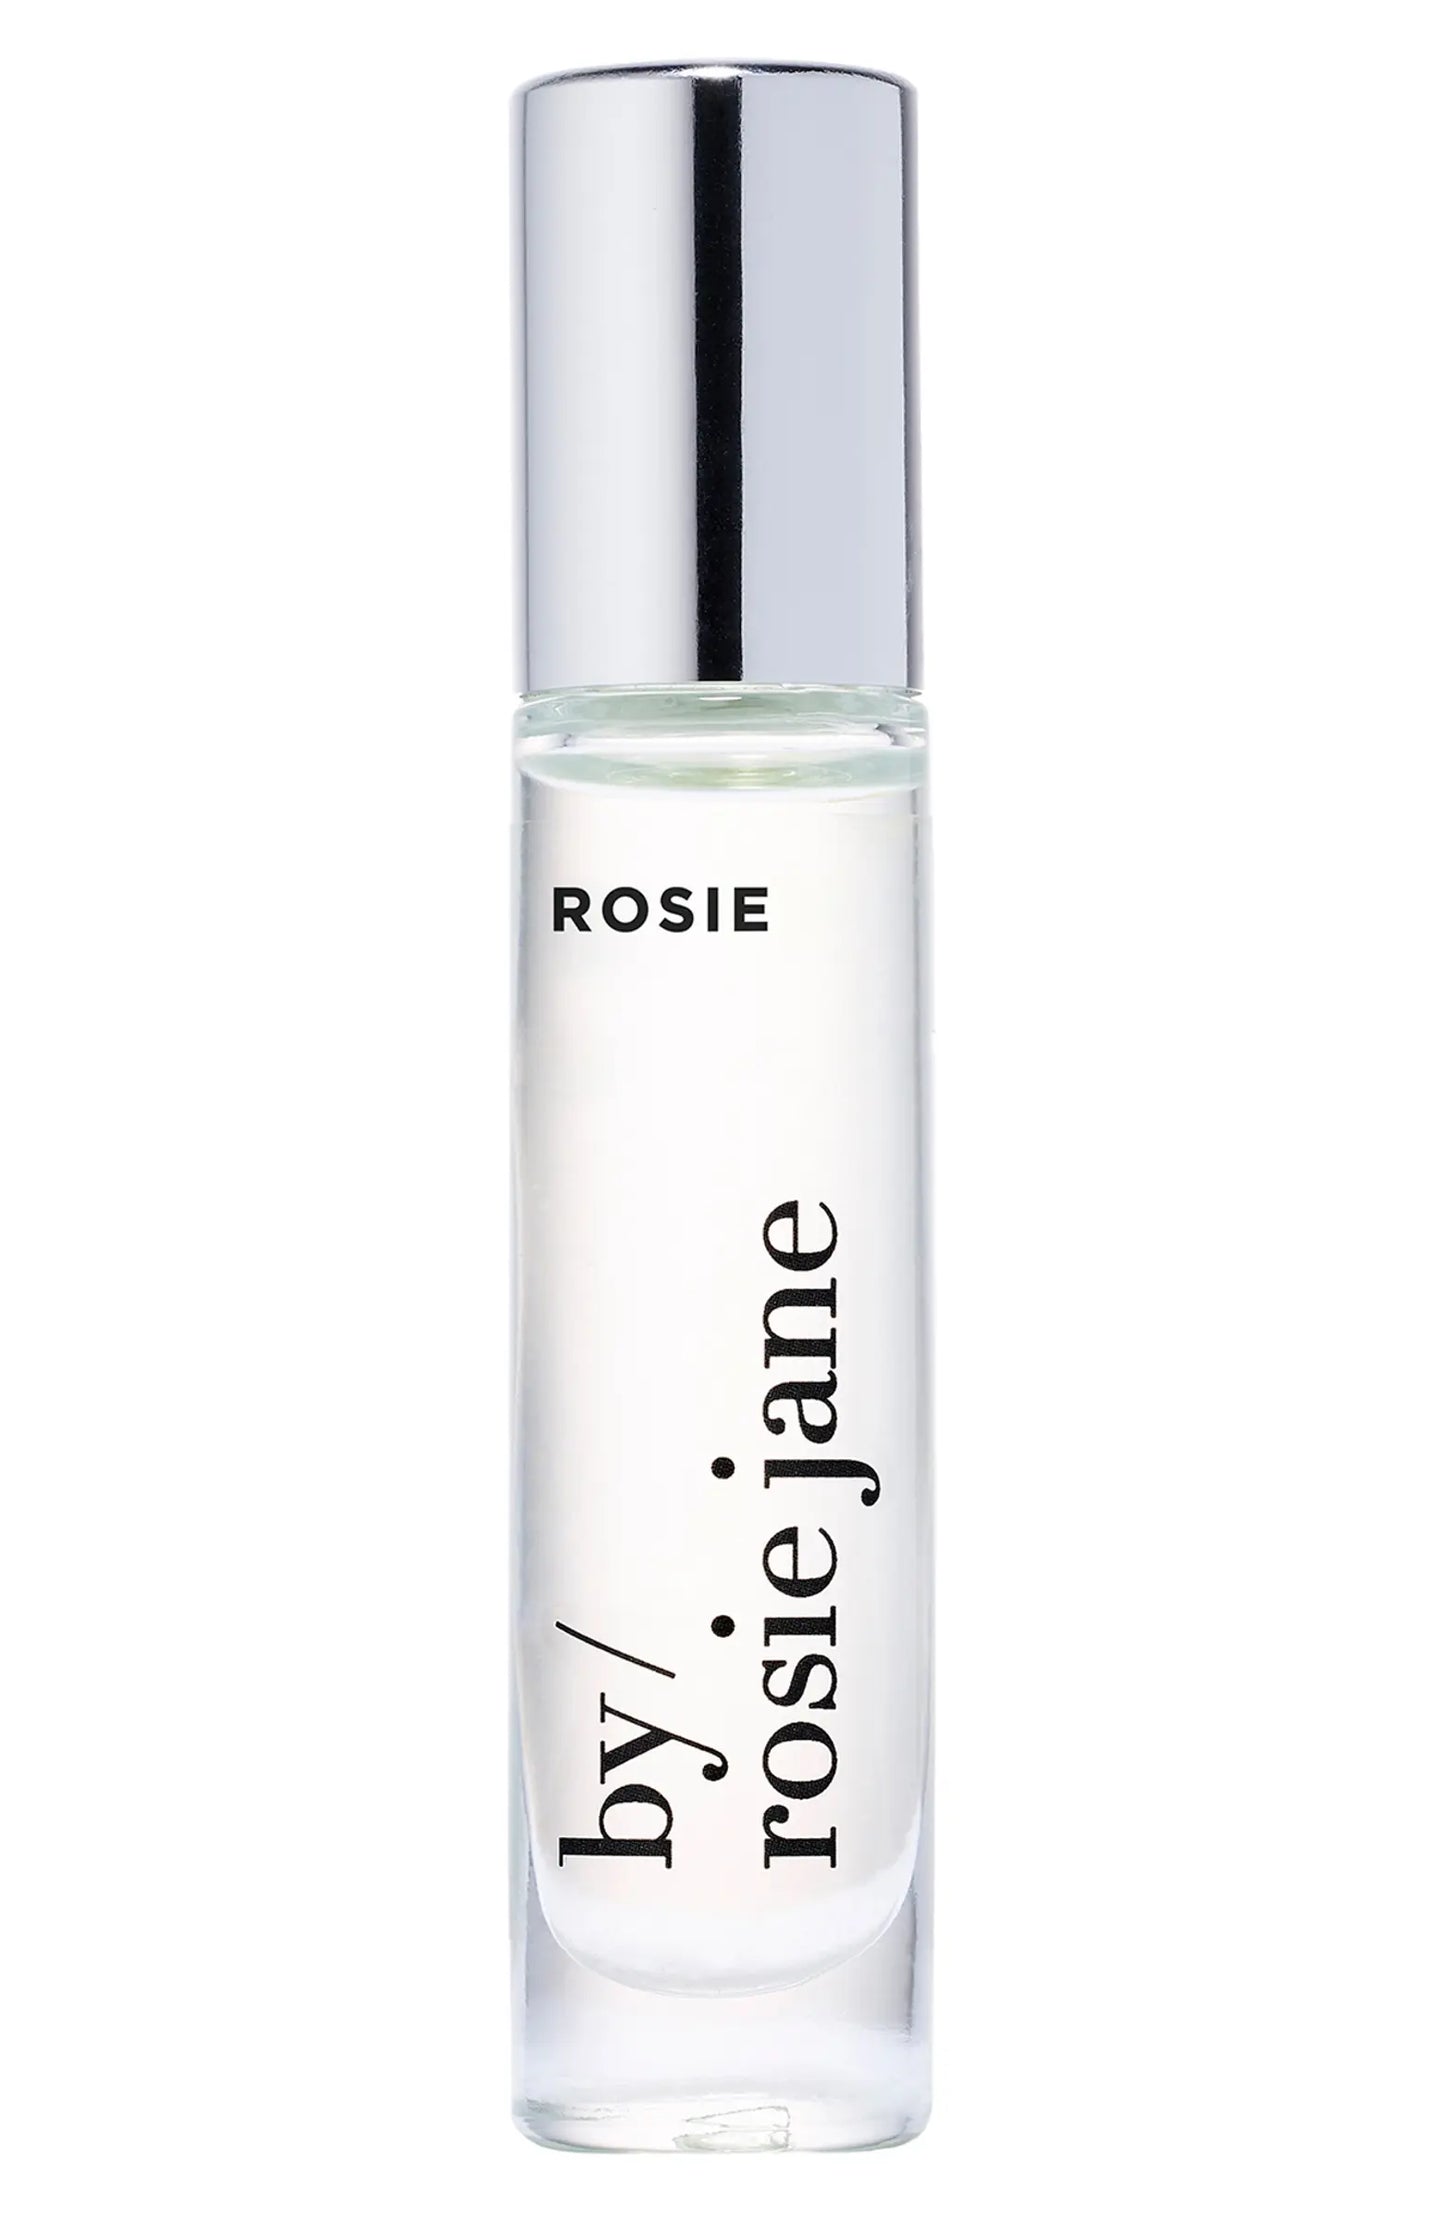 Rosie Fragrance Oil